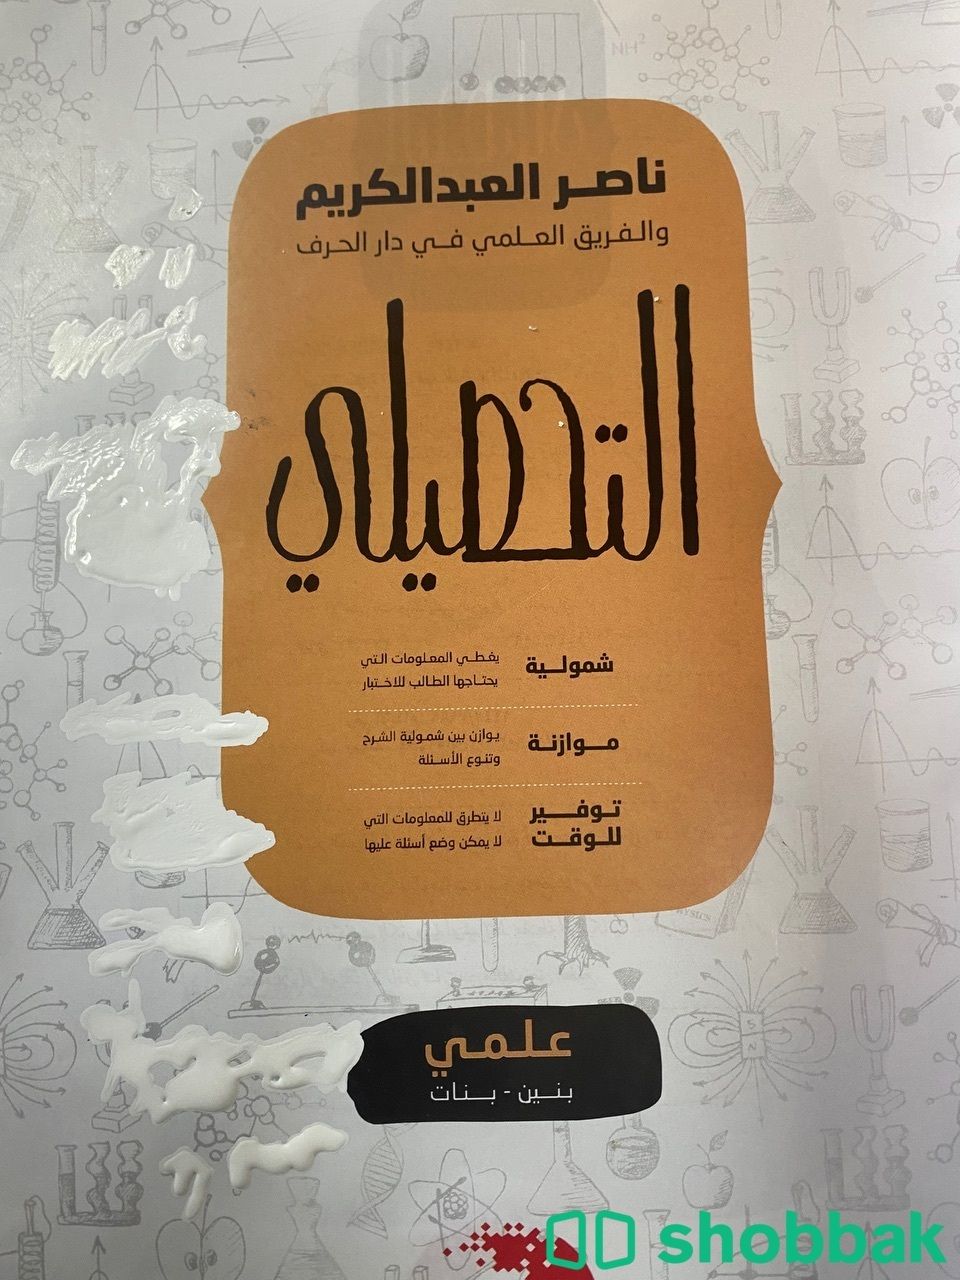 كتاب تحصيلي ناصر العبدالكريم نظيف جدًا جدًا Shobbak Saudi Arabia